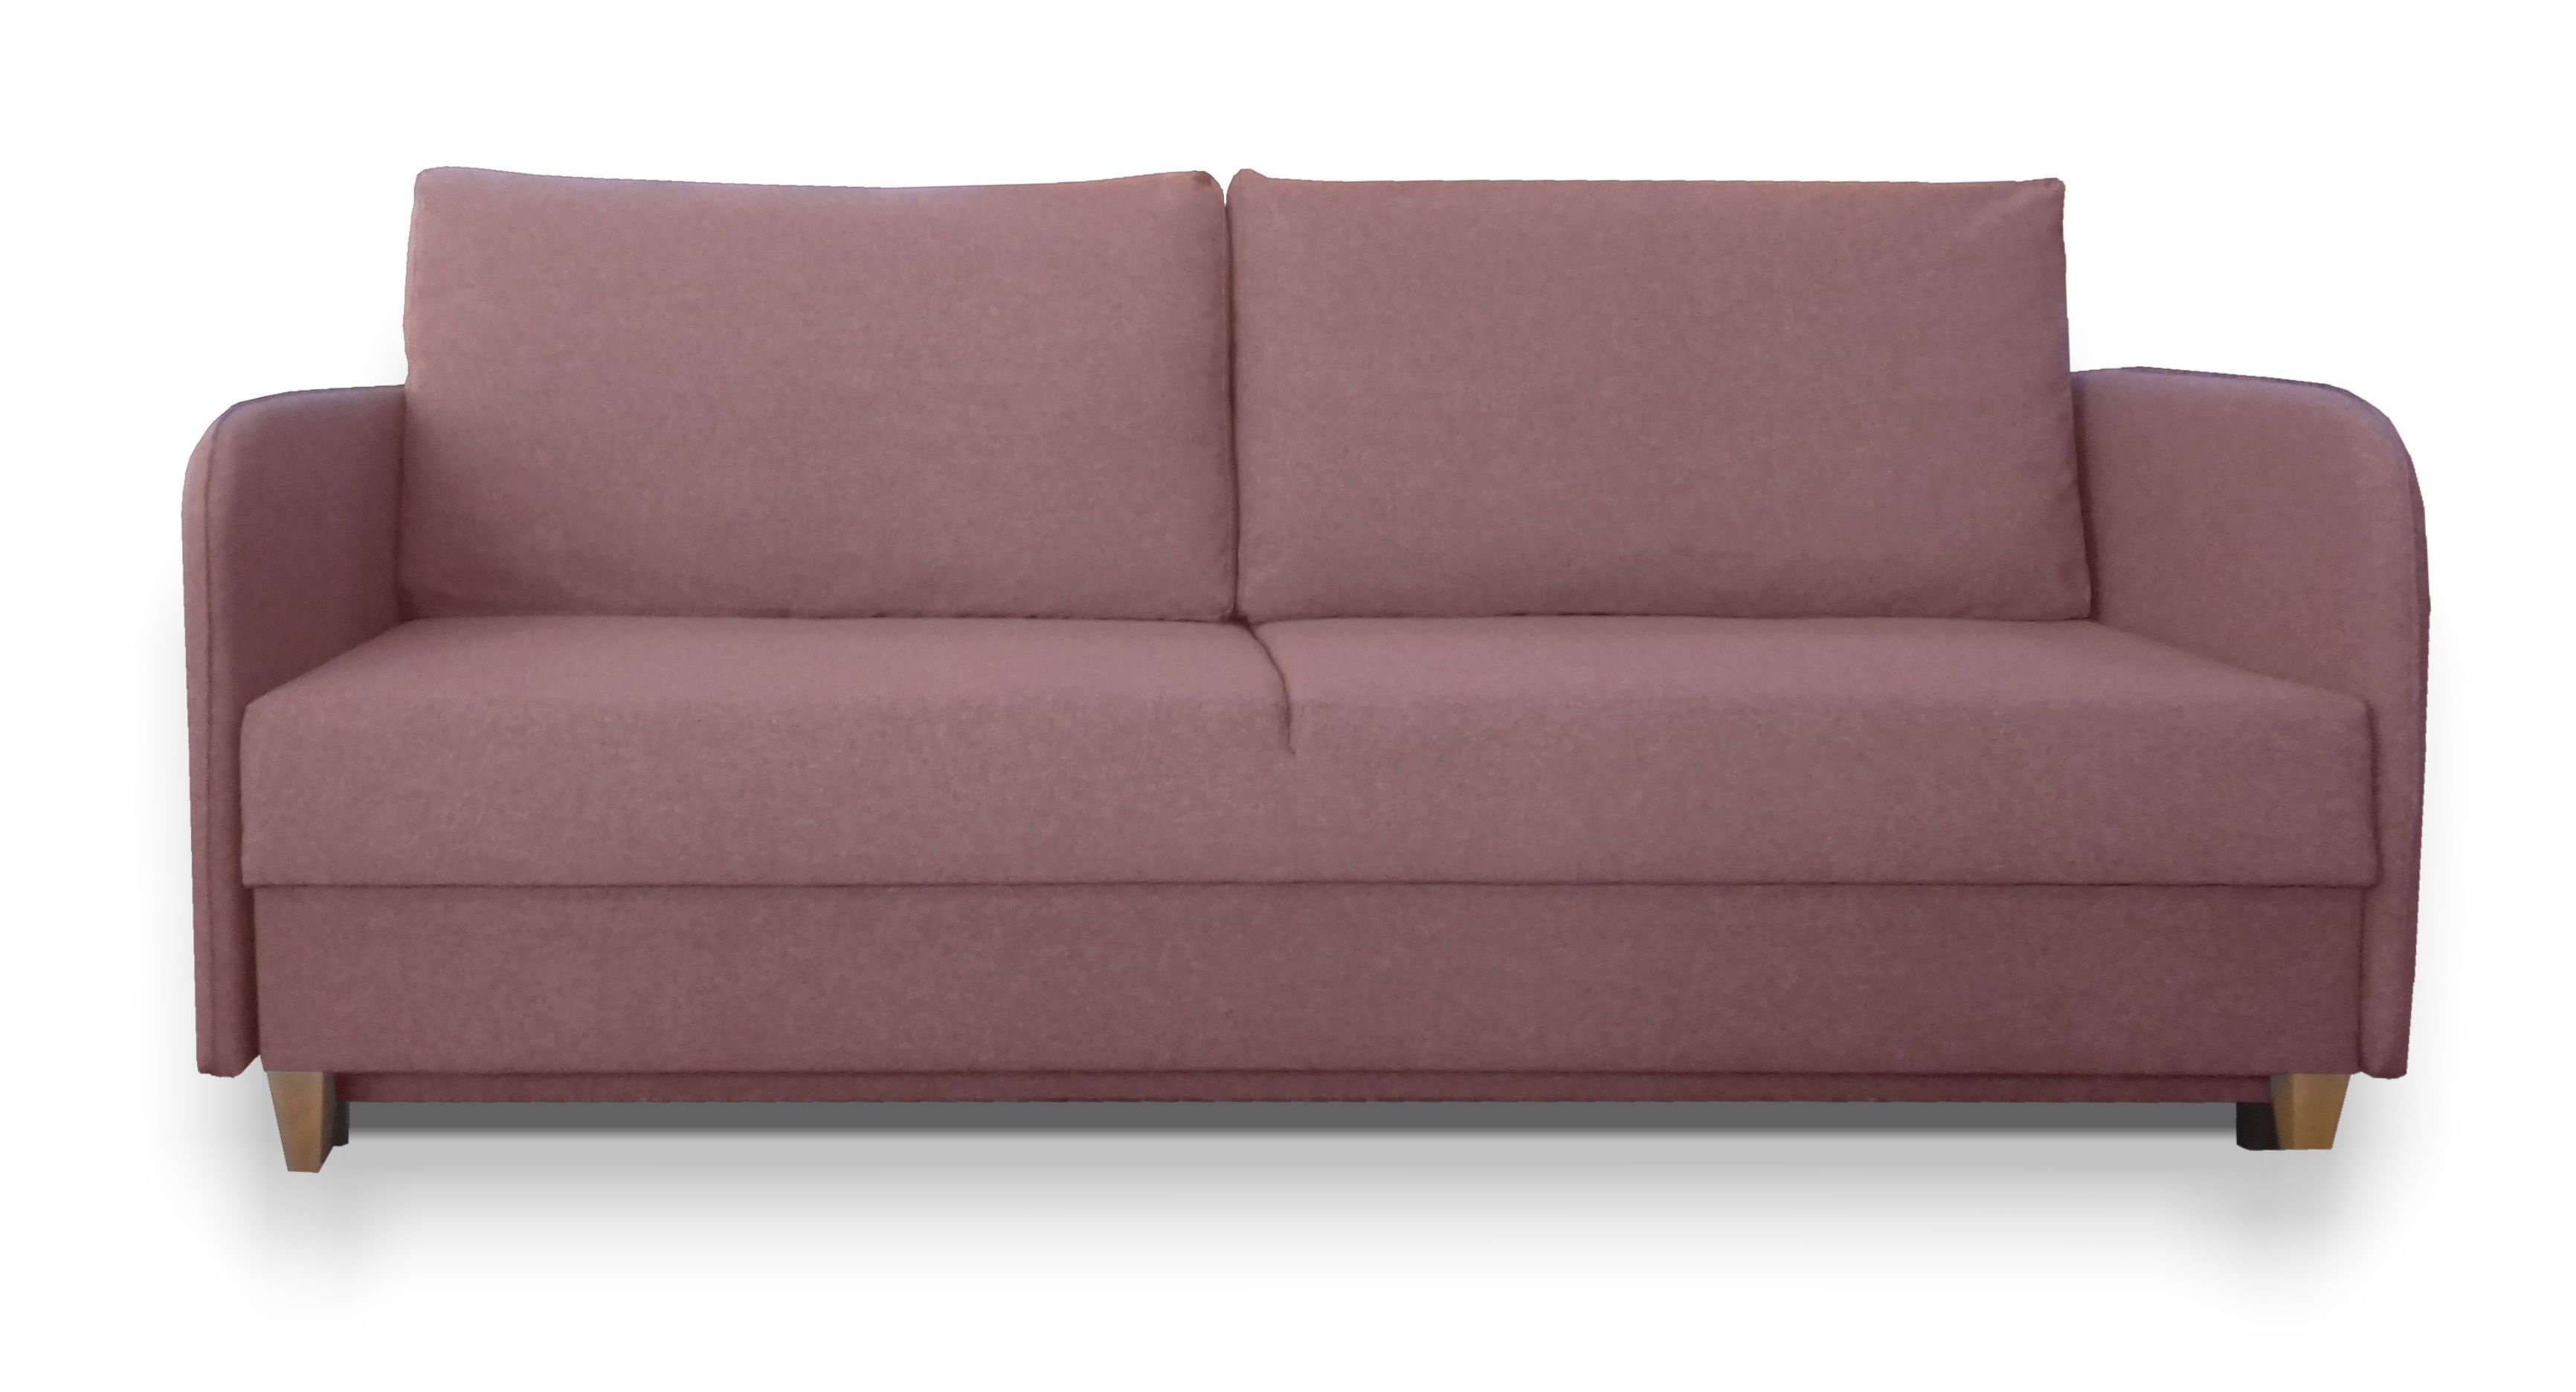 Siblo 3-Sitzer Ausziehbares Dreisitziges Sofa Pablo mit Schlaffunktion - Bettzeugbehälter - Dreisitzer-Sofa Rosa